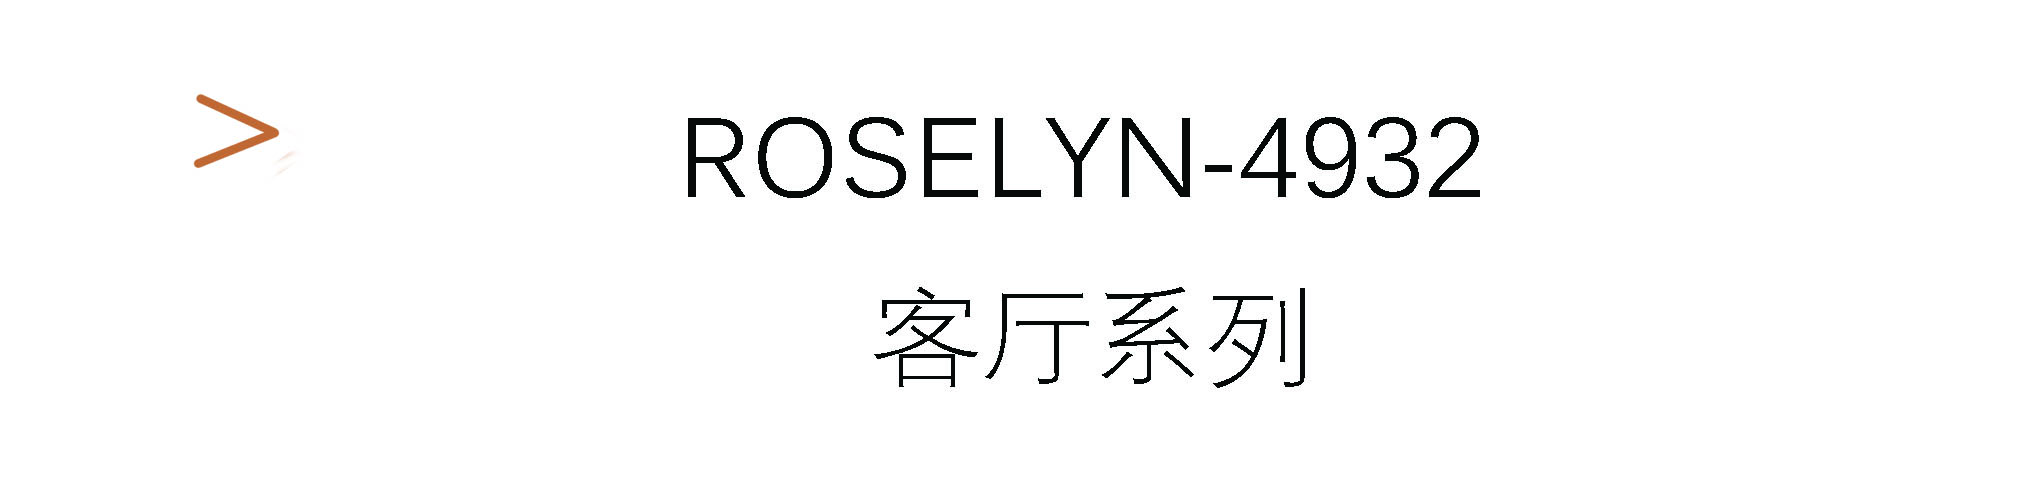 Roselyn-4932